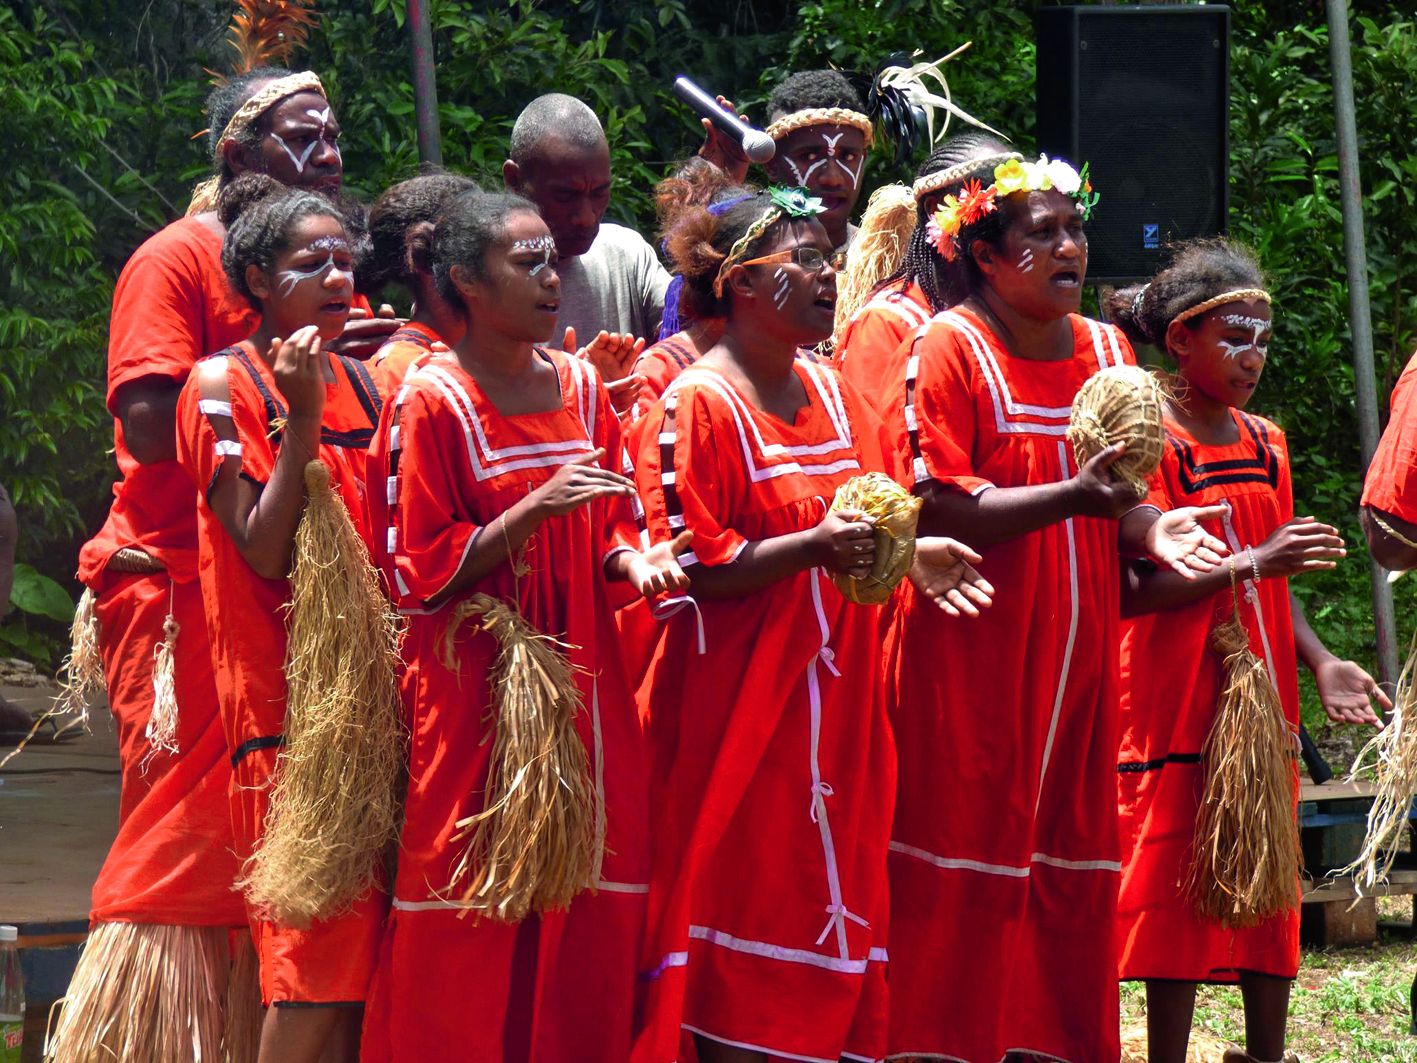 Après les coutumes d’accueil, les danses traditionnelles de la troupe de Kumo ont lancé l’ouverture de l’édition 2018. Des chants et des danses en rapport avec l’igname et la terre ont rythmé la journée.